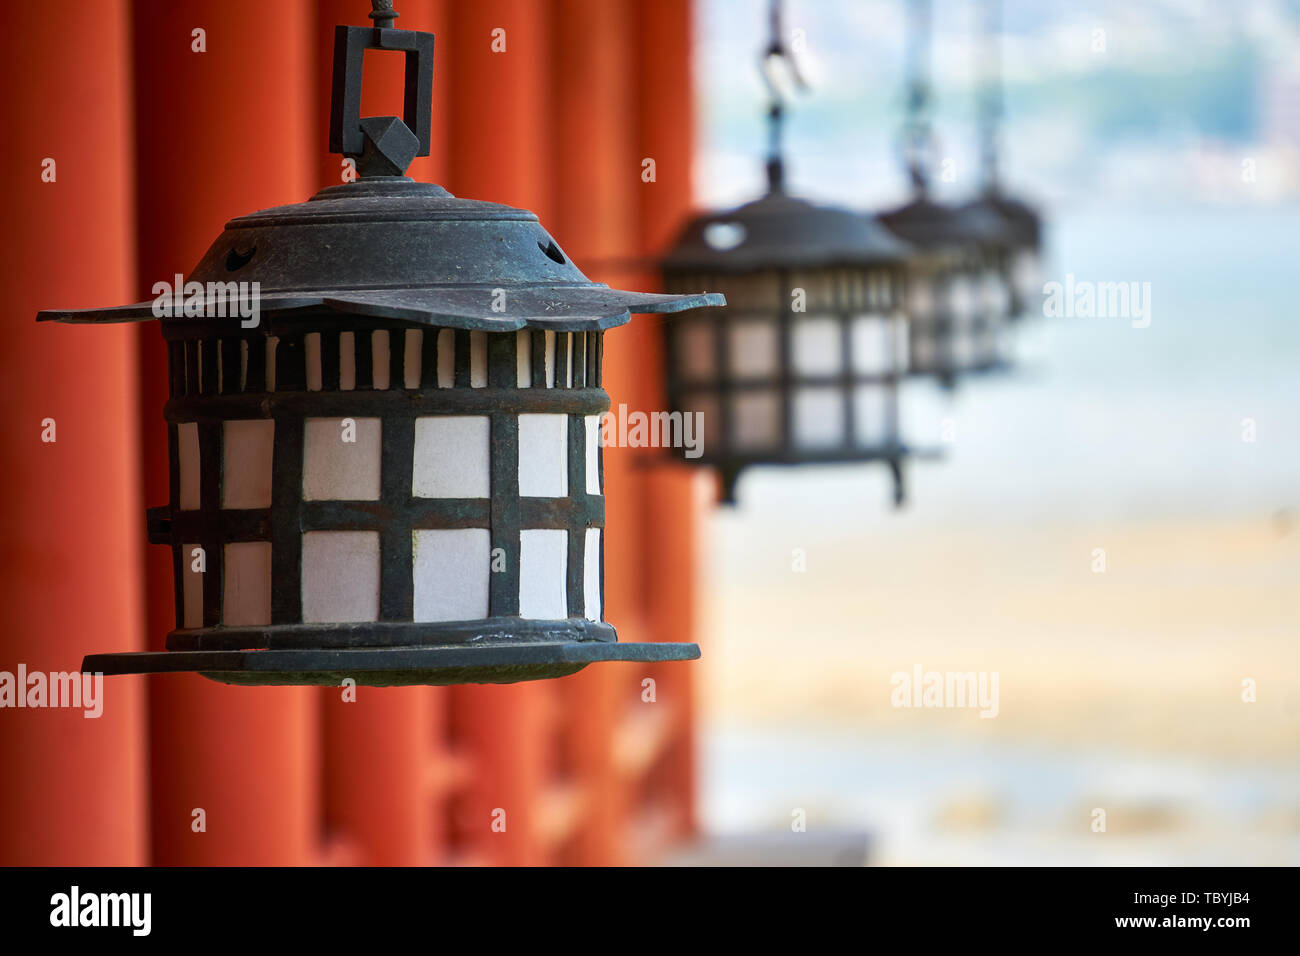 Schwarze und weiße Laternen hängen in einer Reihe von Spalten in Zinnoberrot Itsukushima Jinja Schrein in Miyajima, Japan, mit der Seto Inland Sea hinter sich. Stockfoto